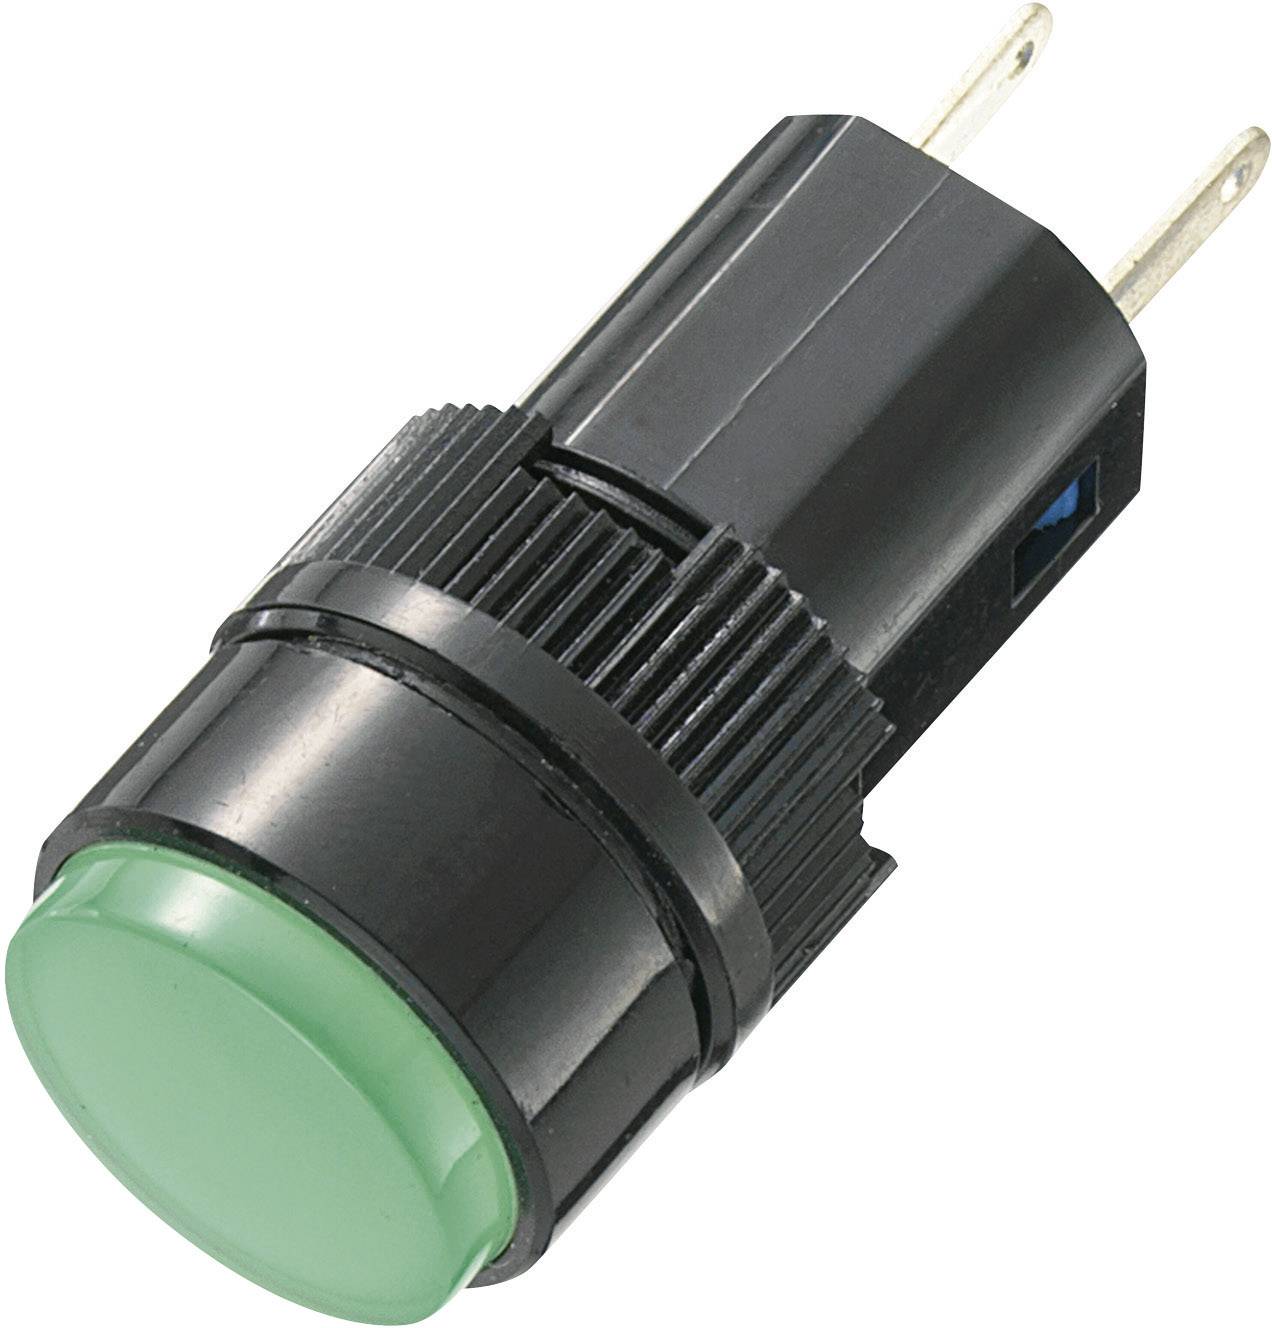 FHF LED-Signalleuchte BLK Super LED 24 VDC 2000 lm grün 22164304